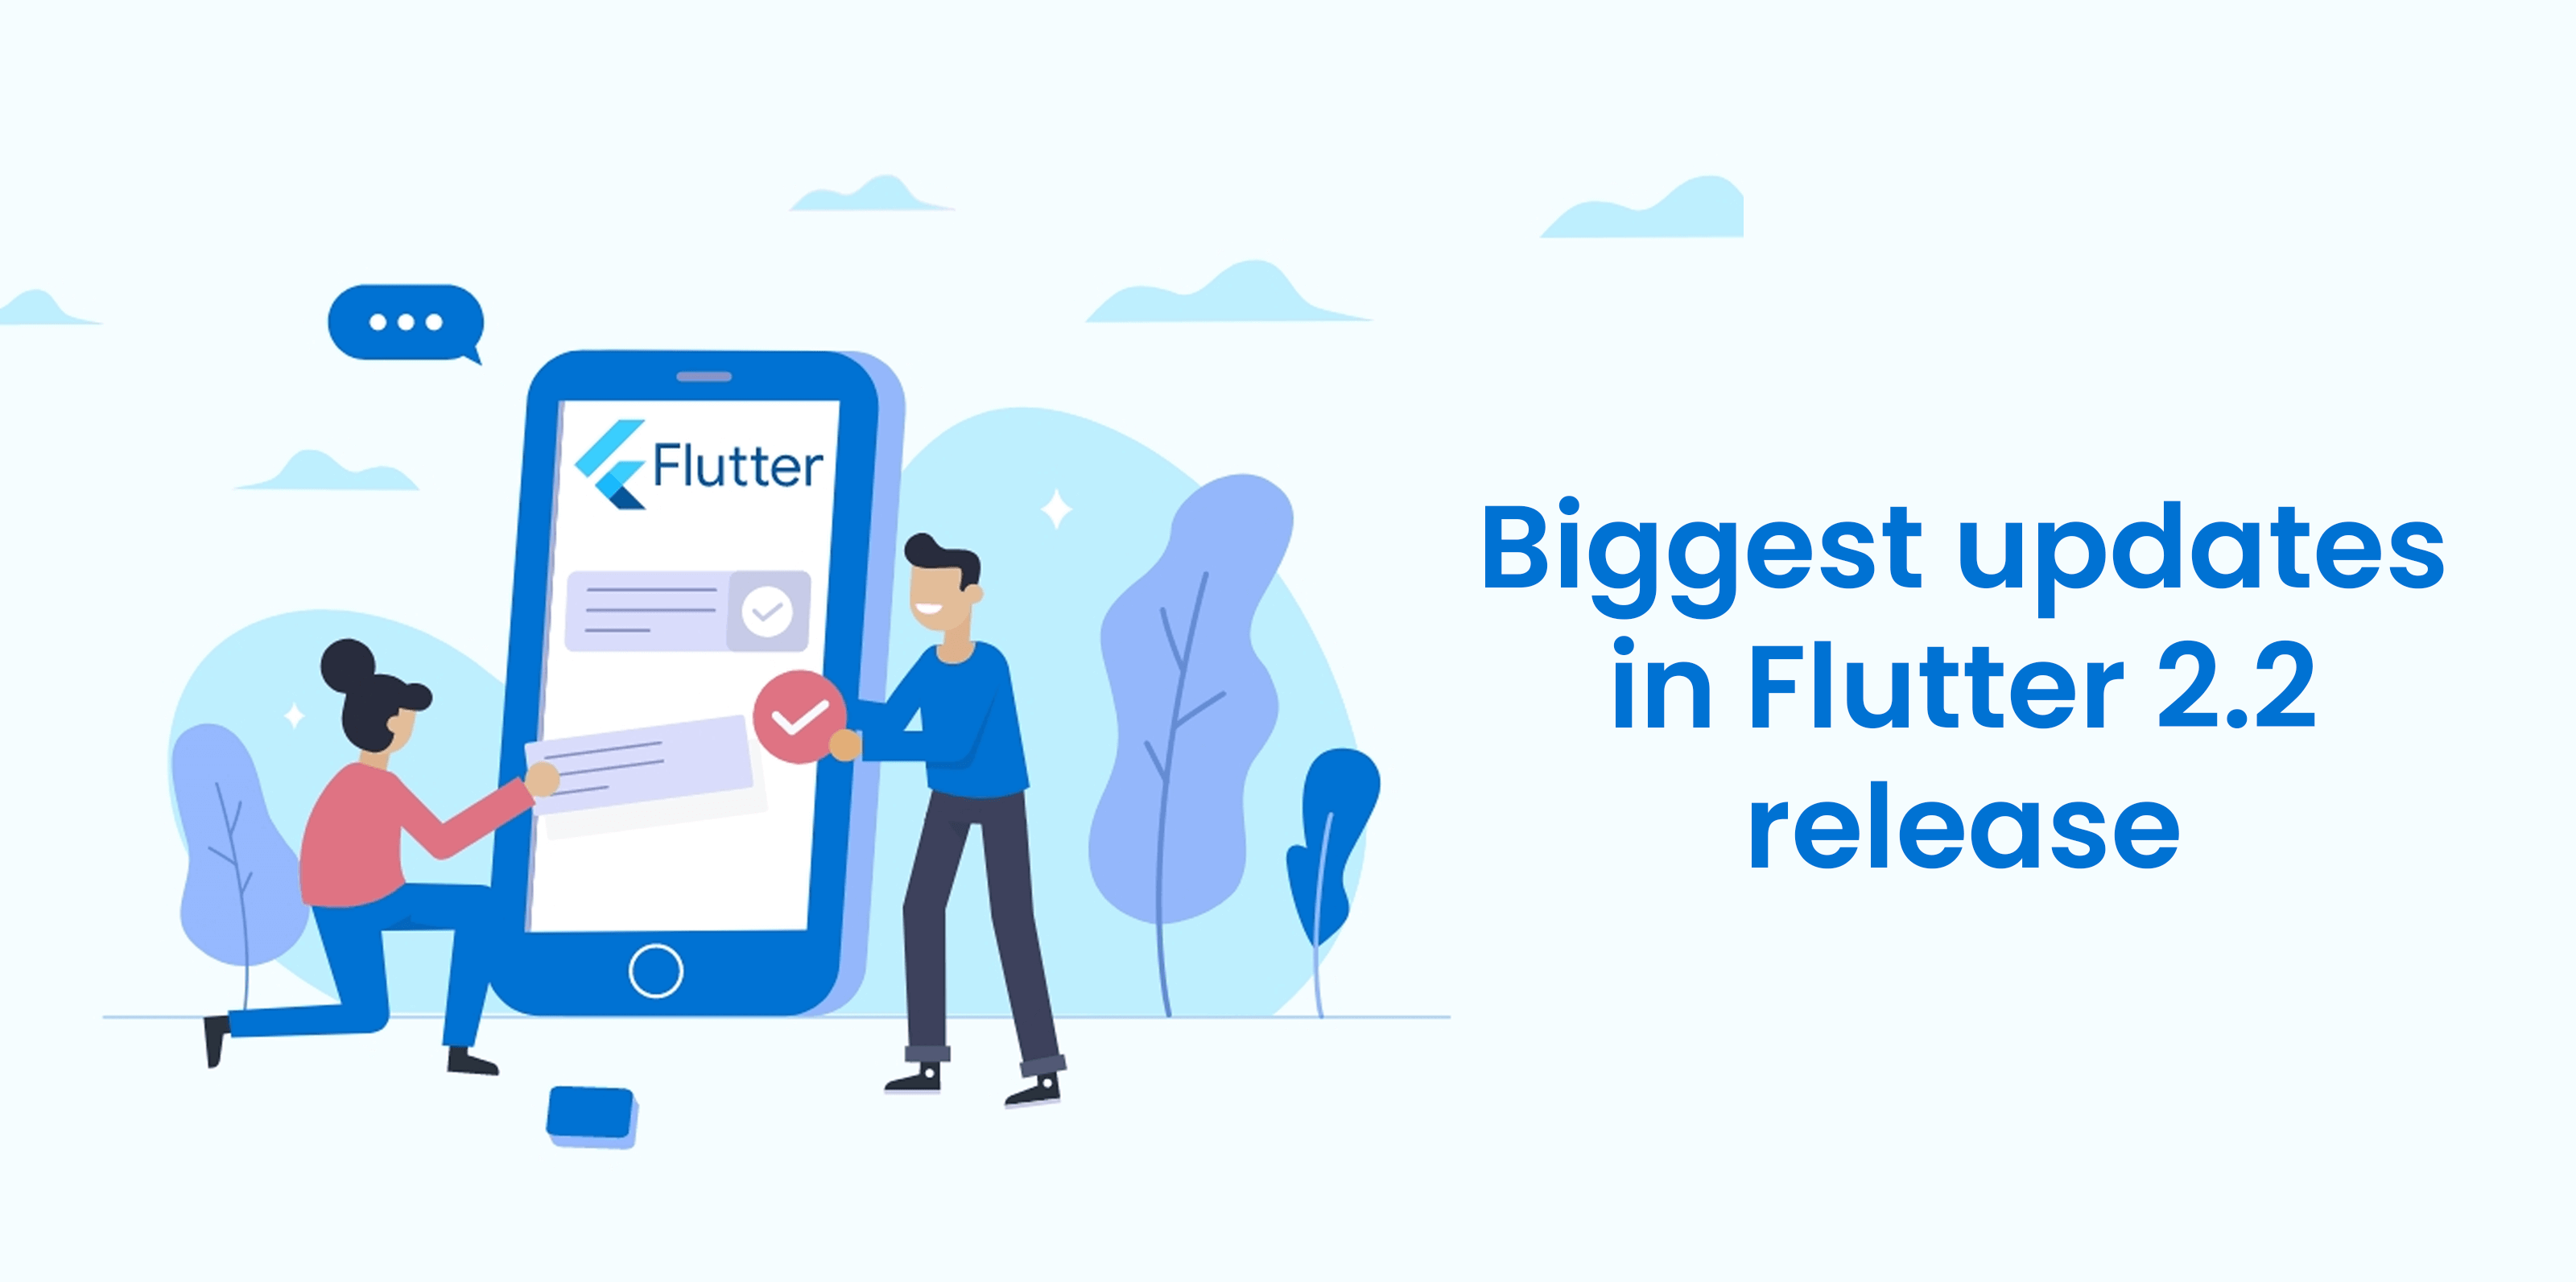 Flutter-2.2-release 中最大的更新